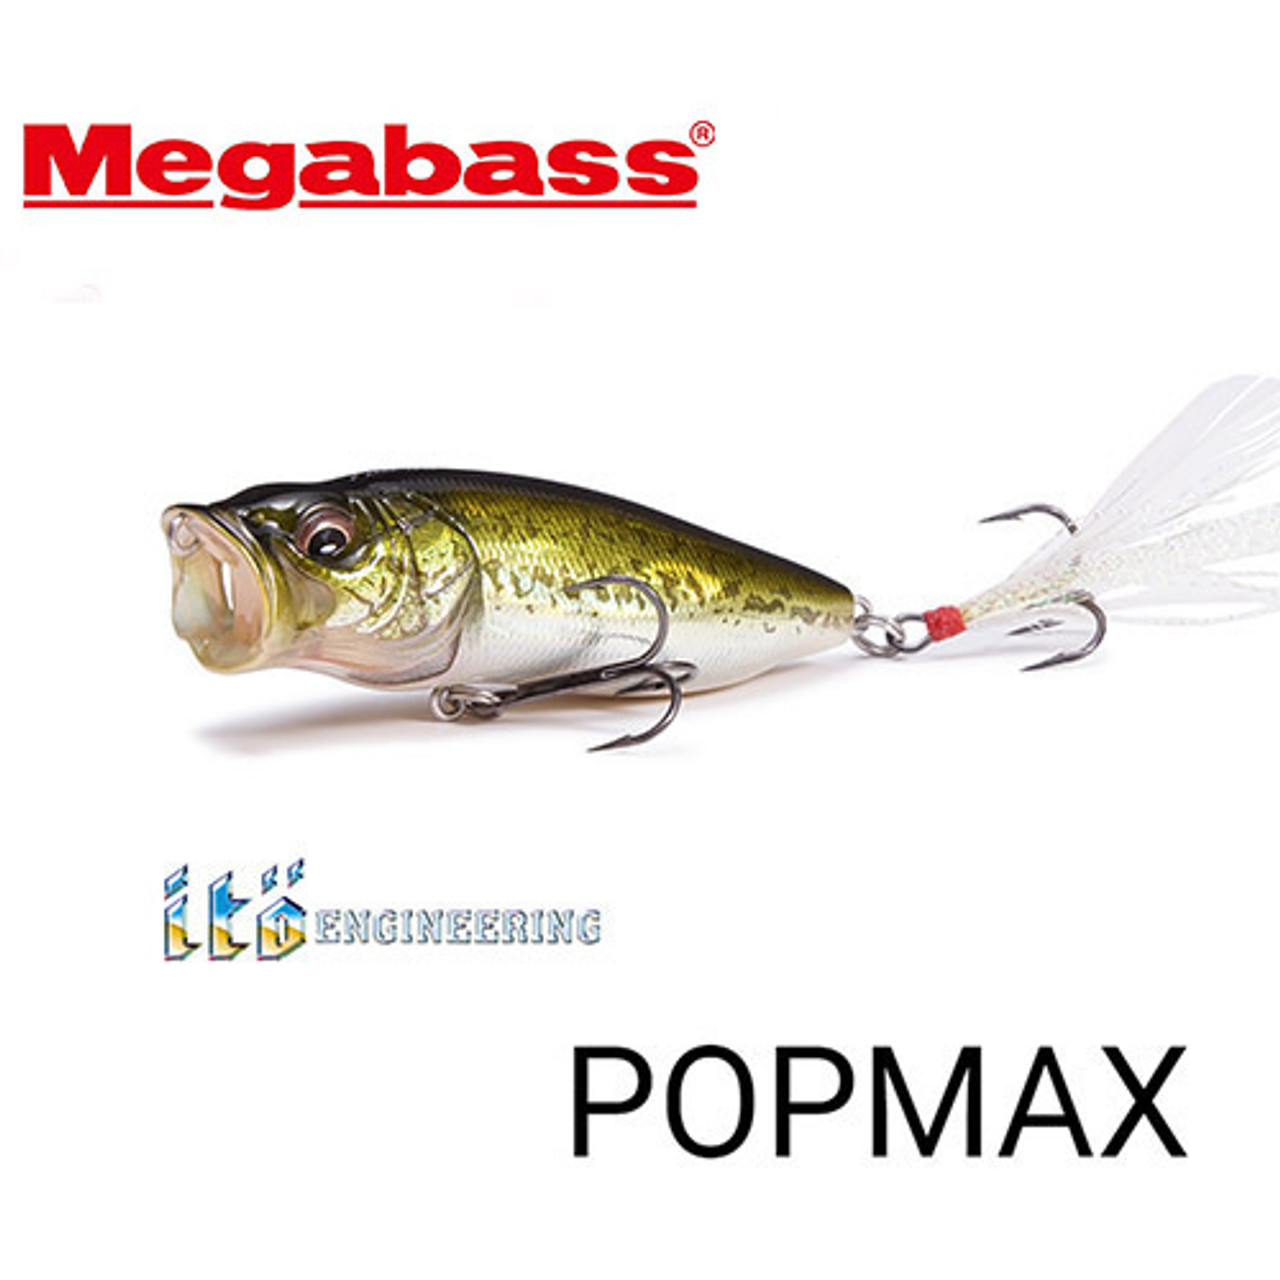 Megabass POPMAX NEW - KKJAPANLURE